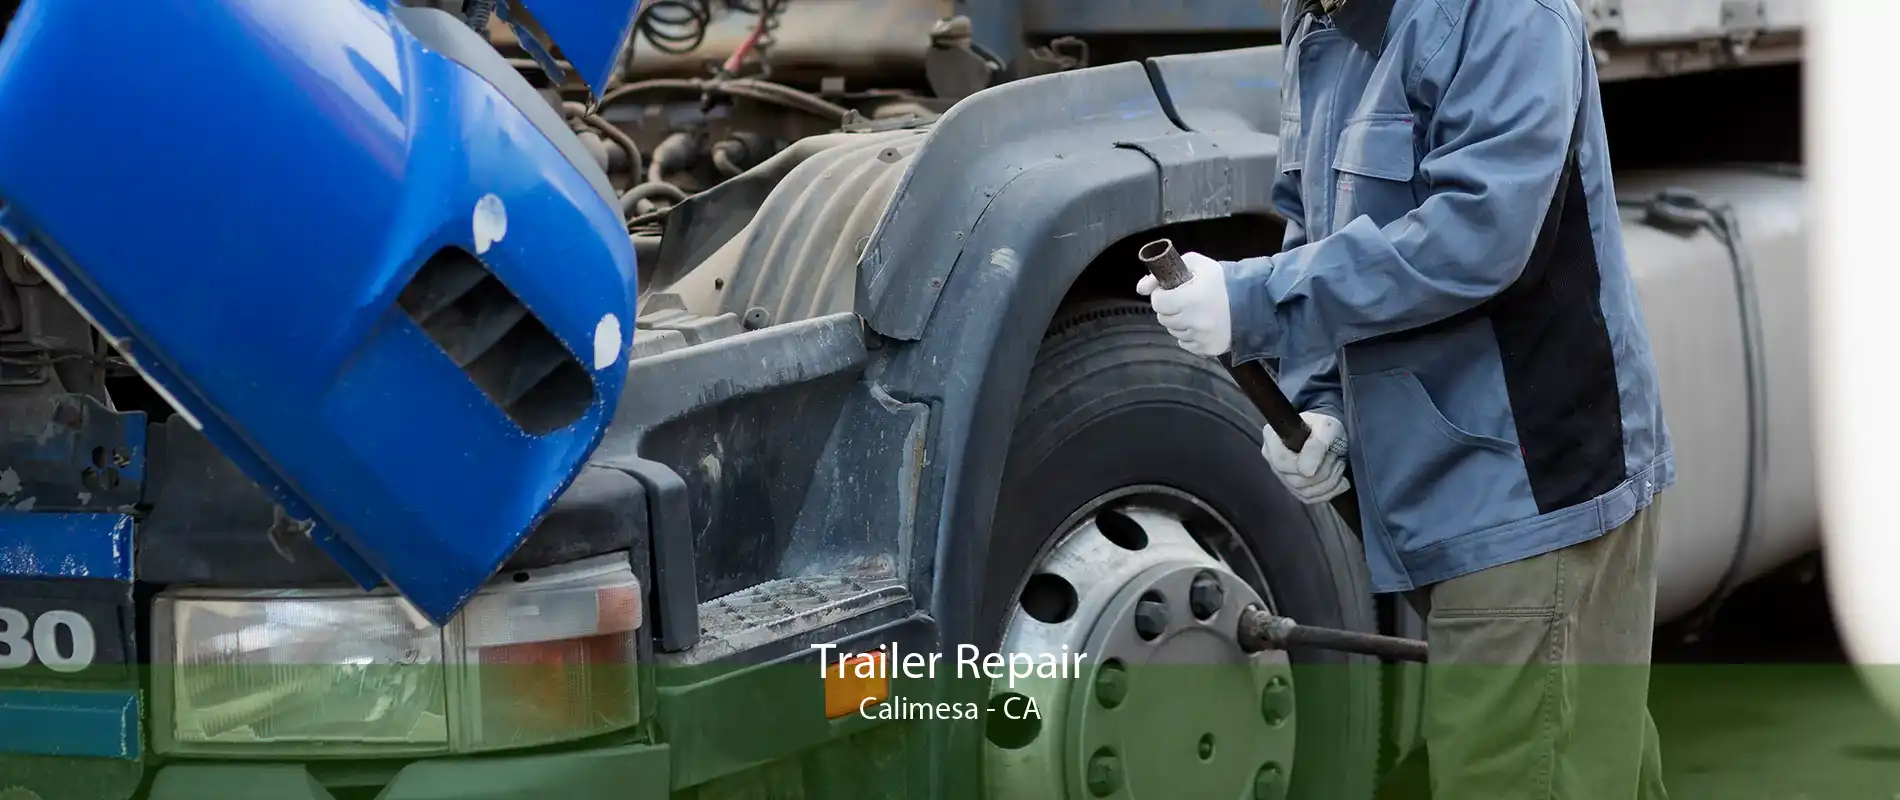 Trailer Repair Calimesa - CA